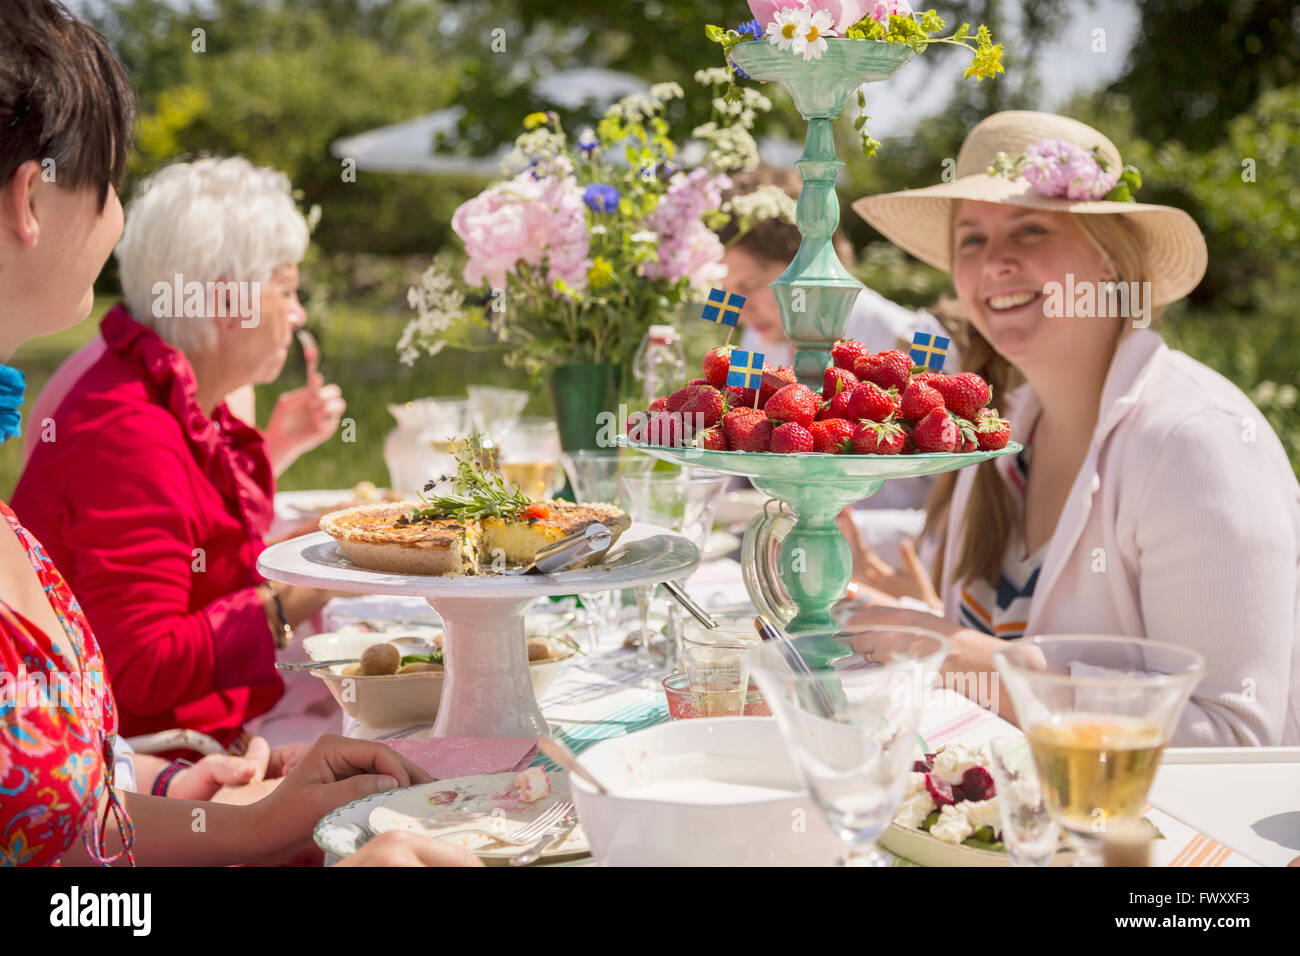 Sweden, Skane, Family during midsummer celebrations Stock Photo